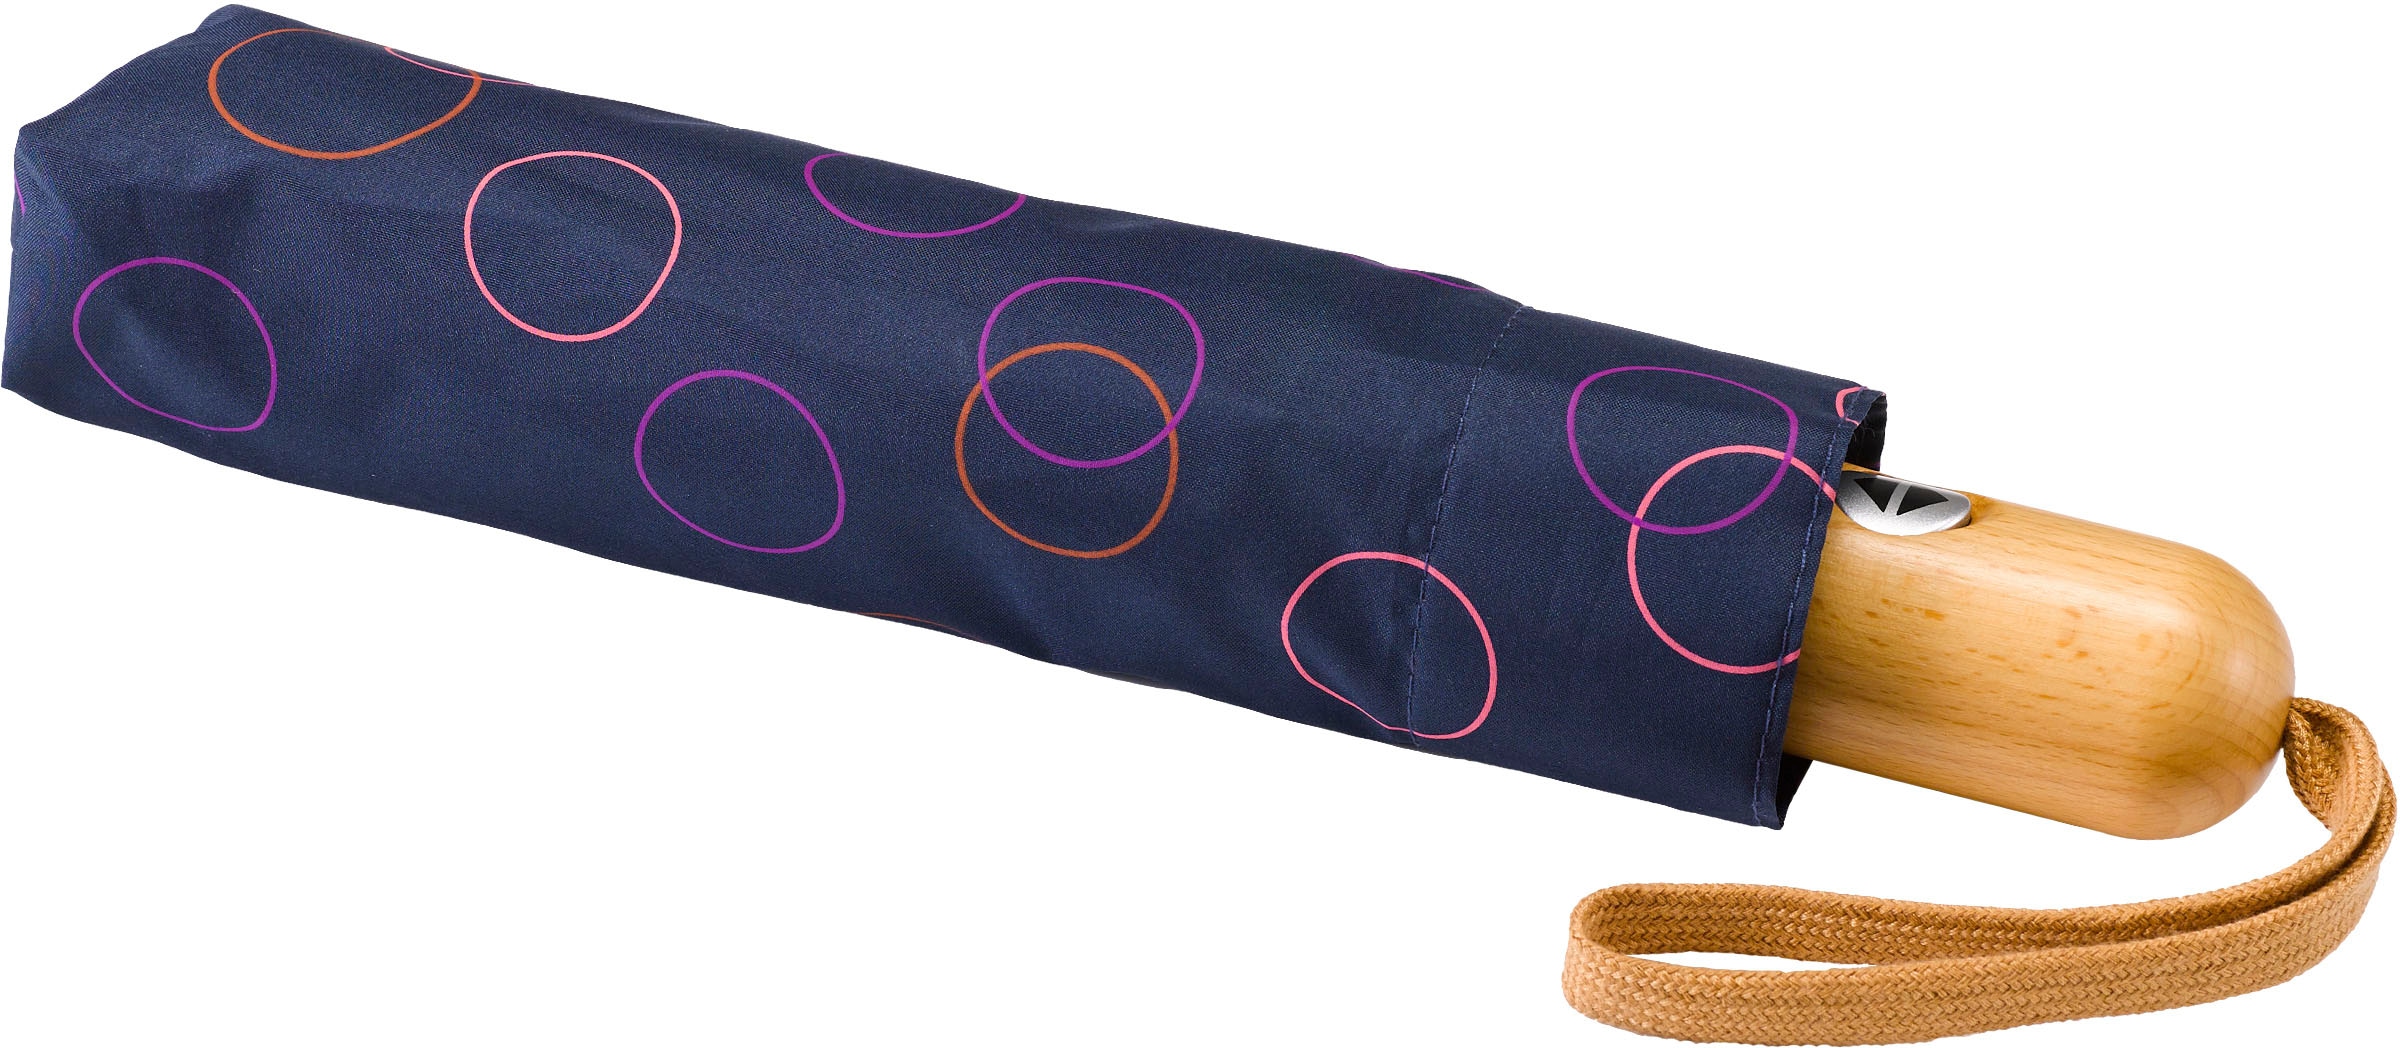 marine, pink« »Umwelt-Taschenschirm, EuroSCHIRM® Kreise kaufen Taschenregenschirm